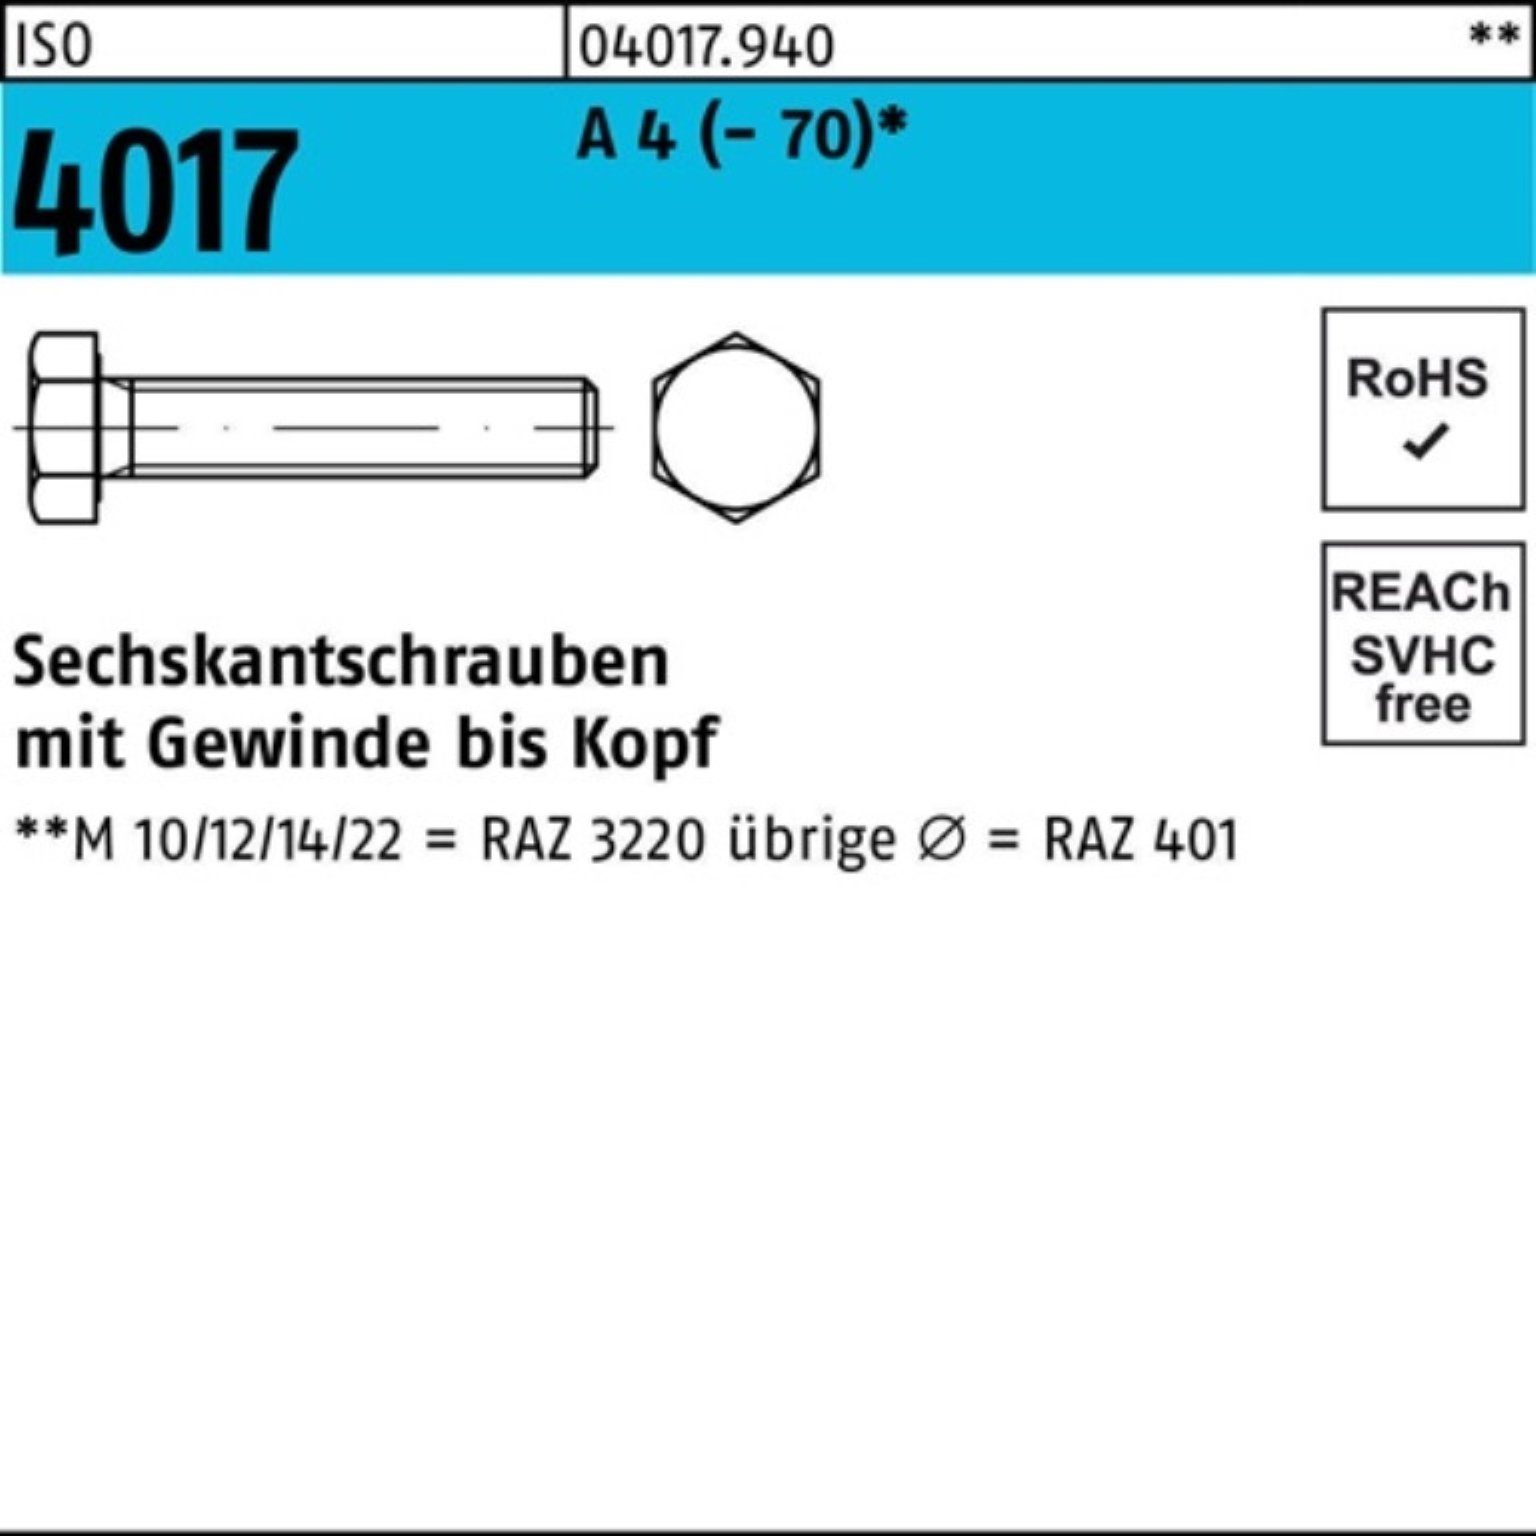 Bufab Sechskantschraube 500er Pack Sechskantschraube ISO 4017 VG M5x 12 A 4 (70) 500 Stück